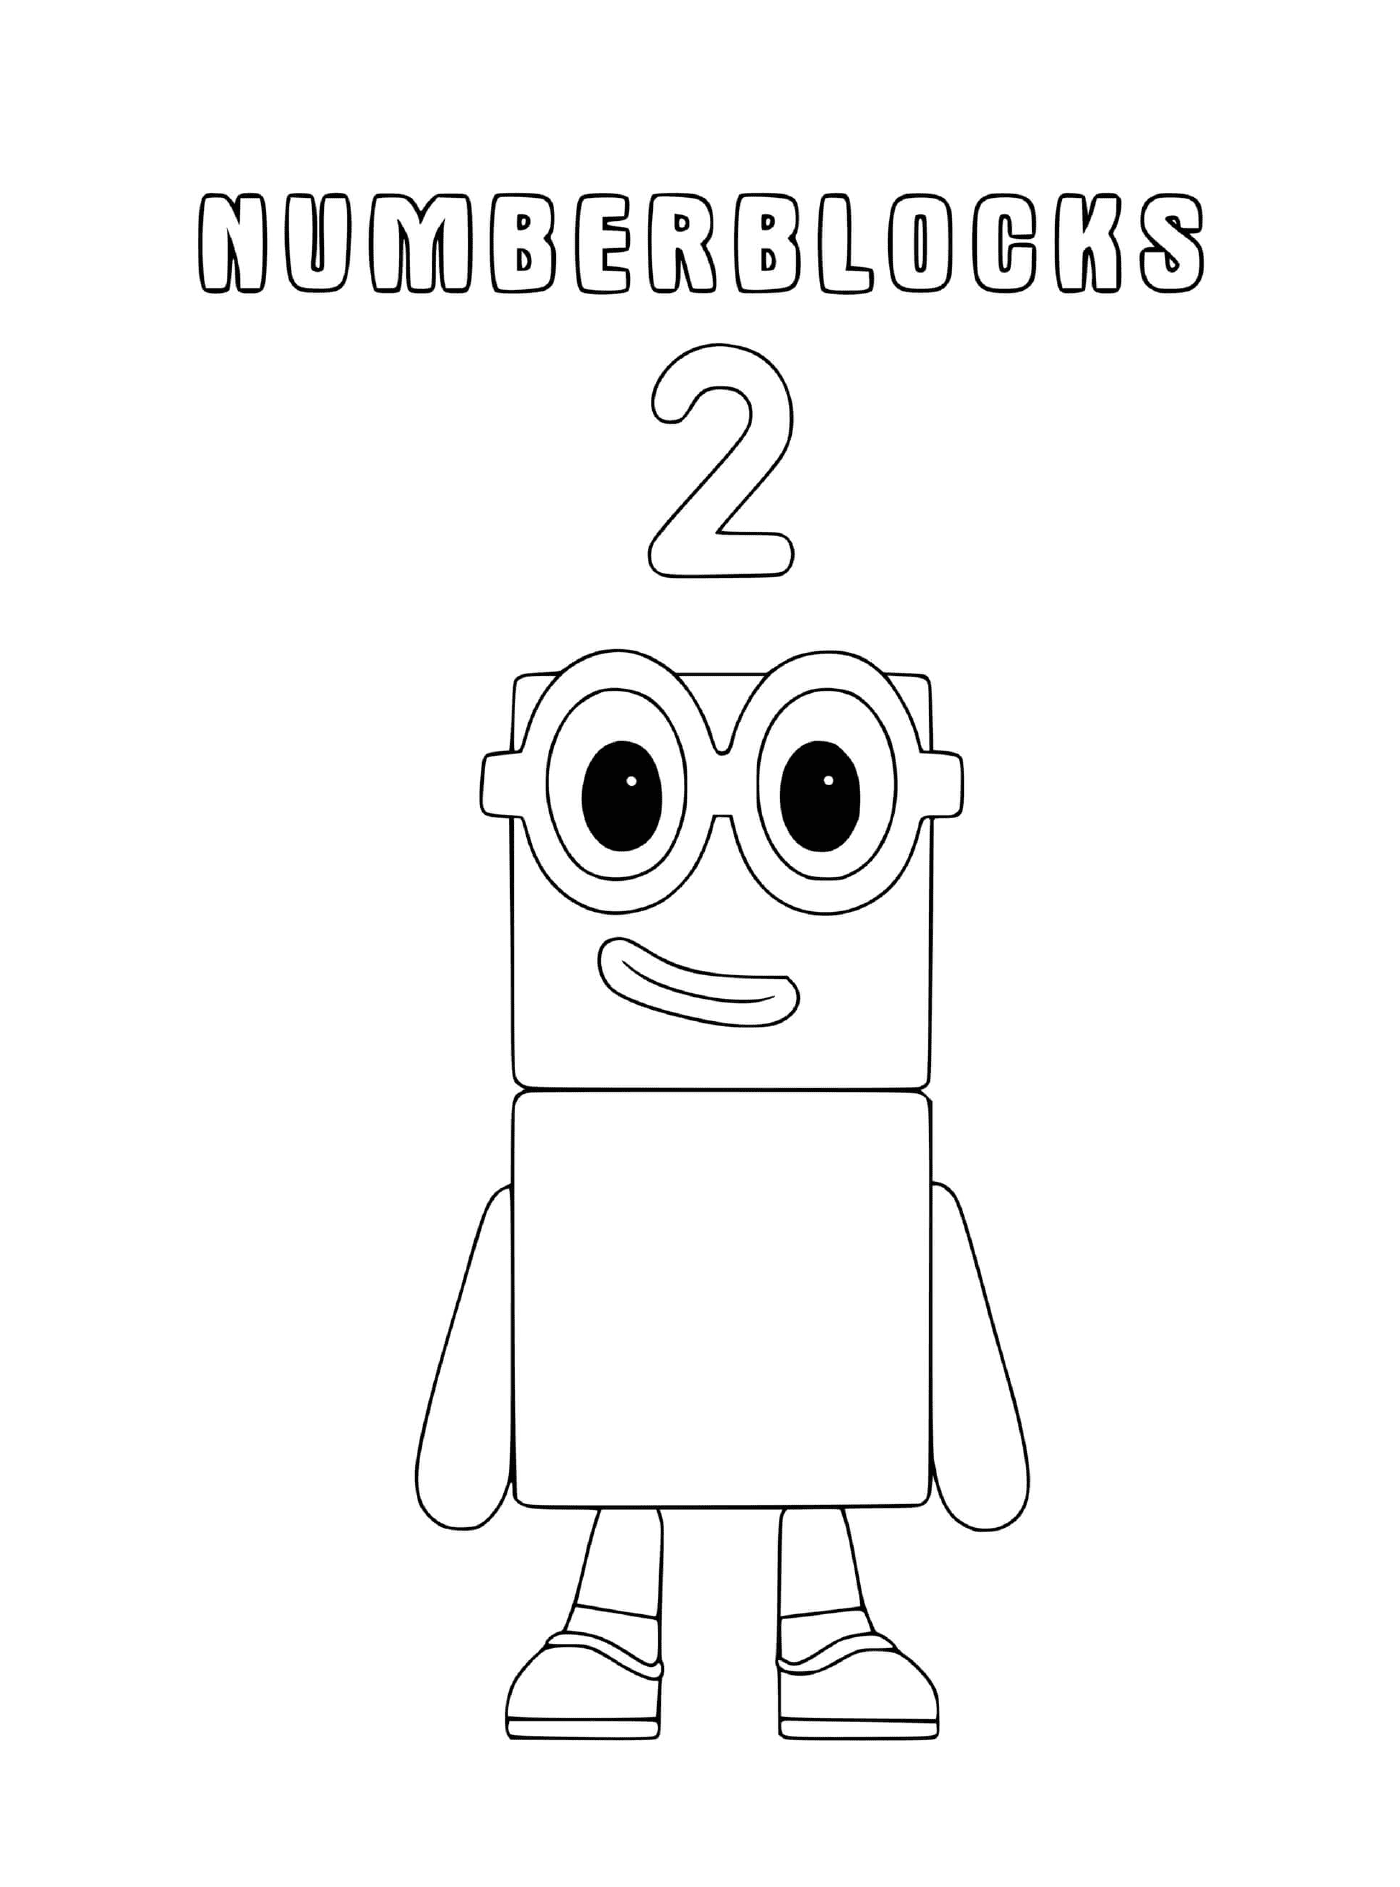  Numberblocks número 2, um robô futurista 